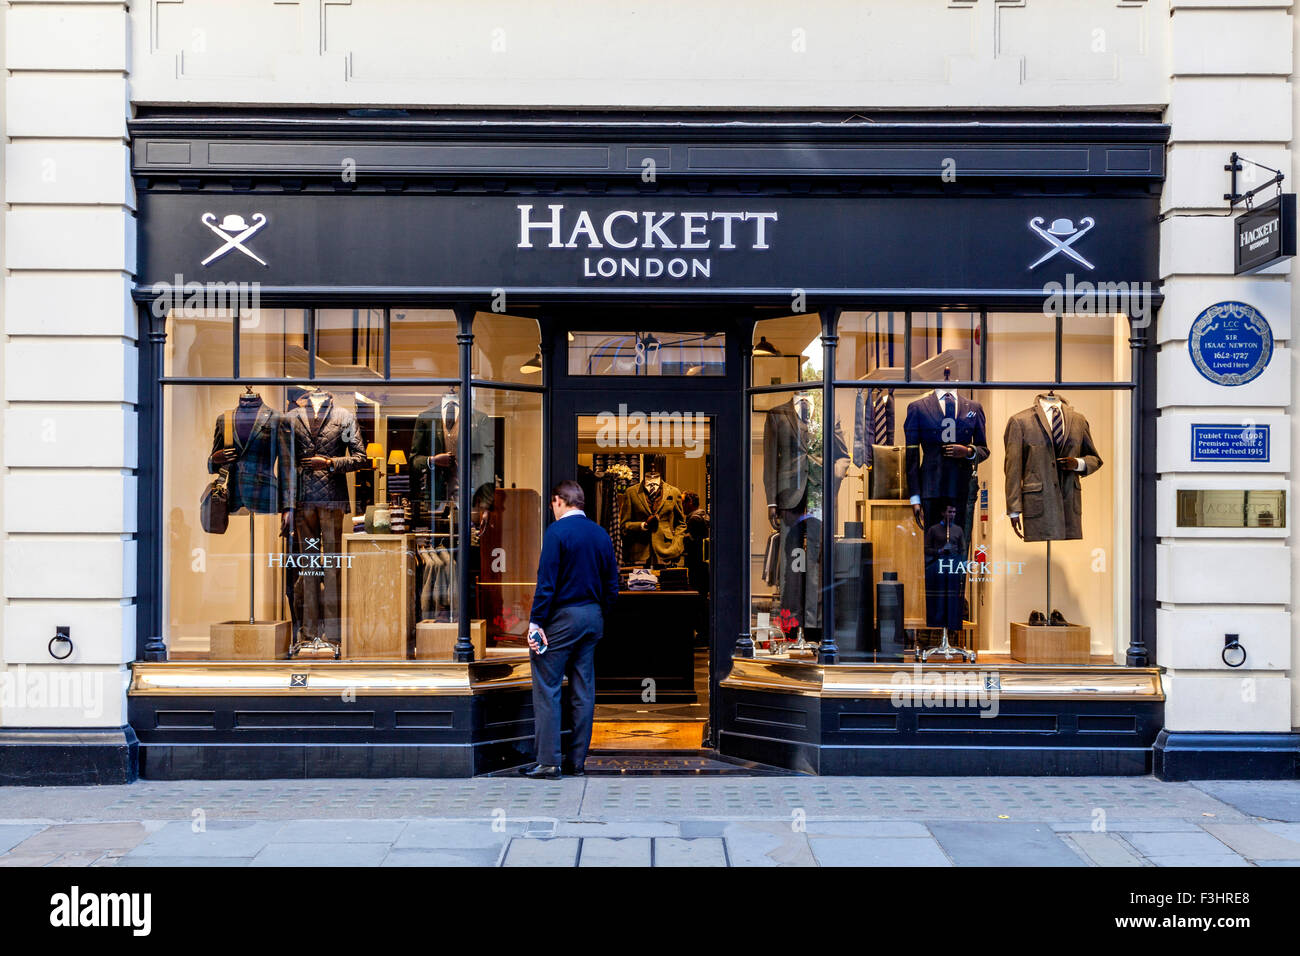 Hackett Menswear Shop, Jermyn Street, Mayfair, London Stock Photo - Alamy